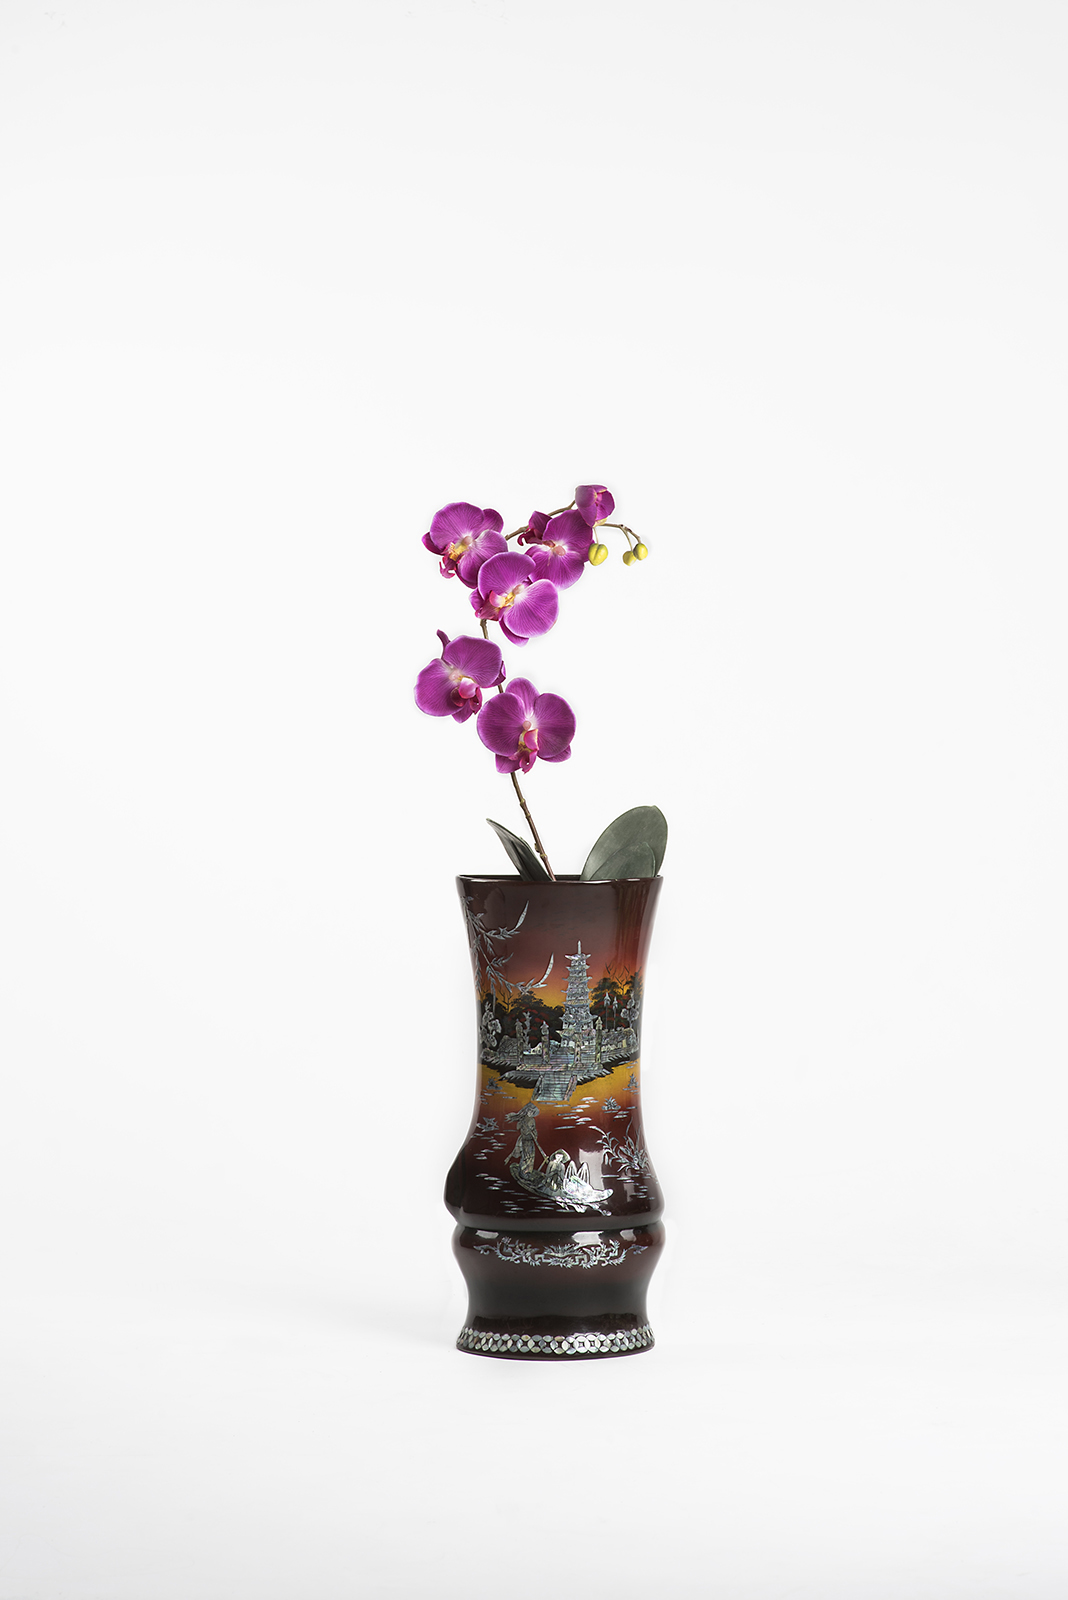 Falschorchidee in einer vietnamesischen Holzlack Vase mit Perlmutt, Luzern, Schweiz © 2017 Thi My Lien Nguyen